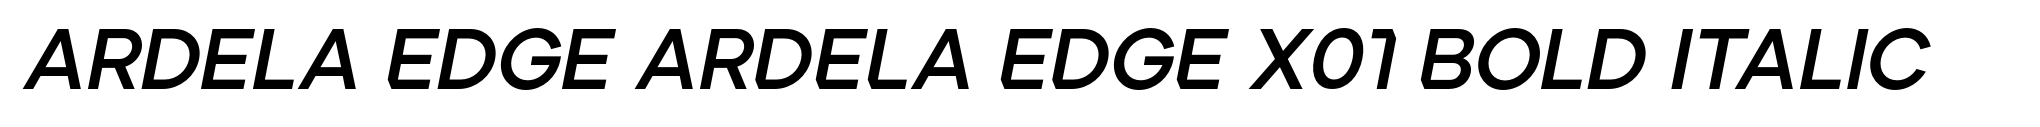 Ardela Edge ARDELA EDGE X01 Bold Italic image